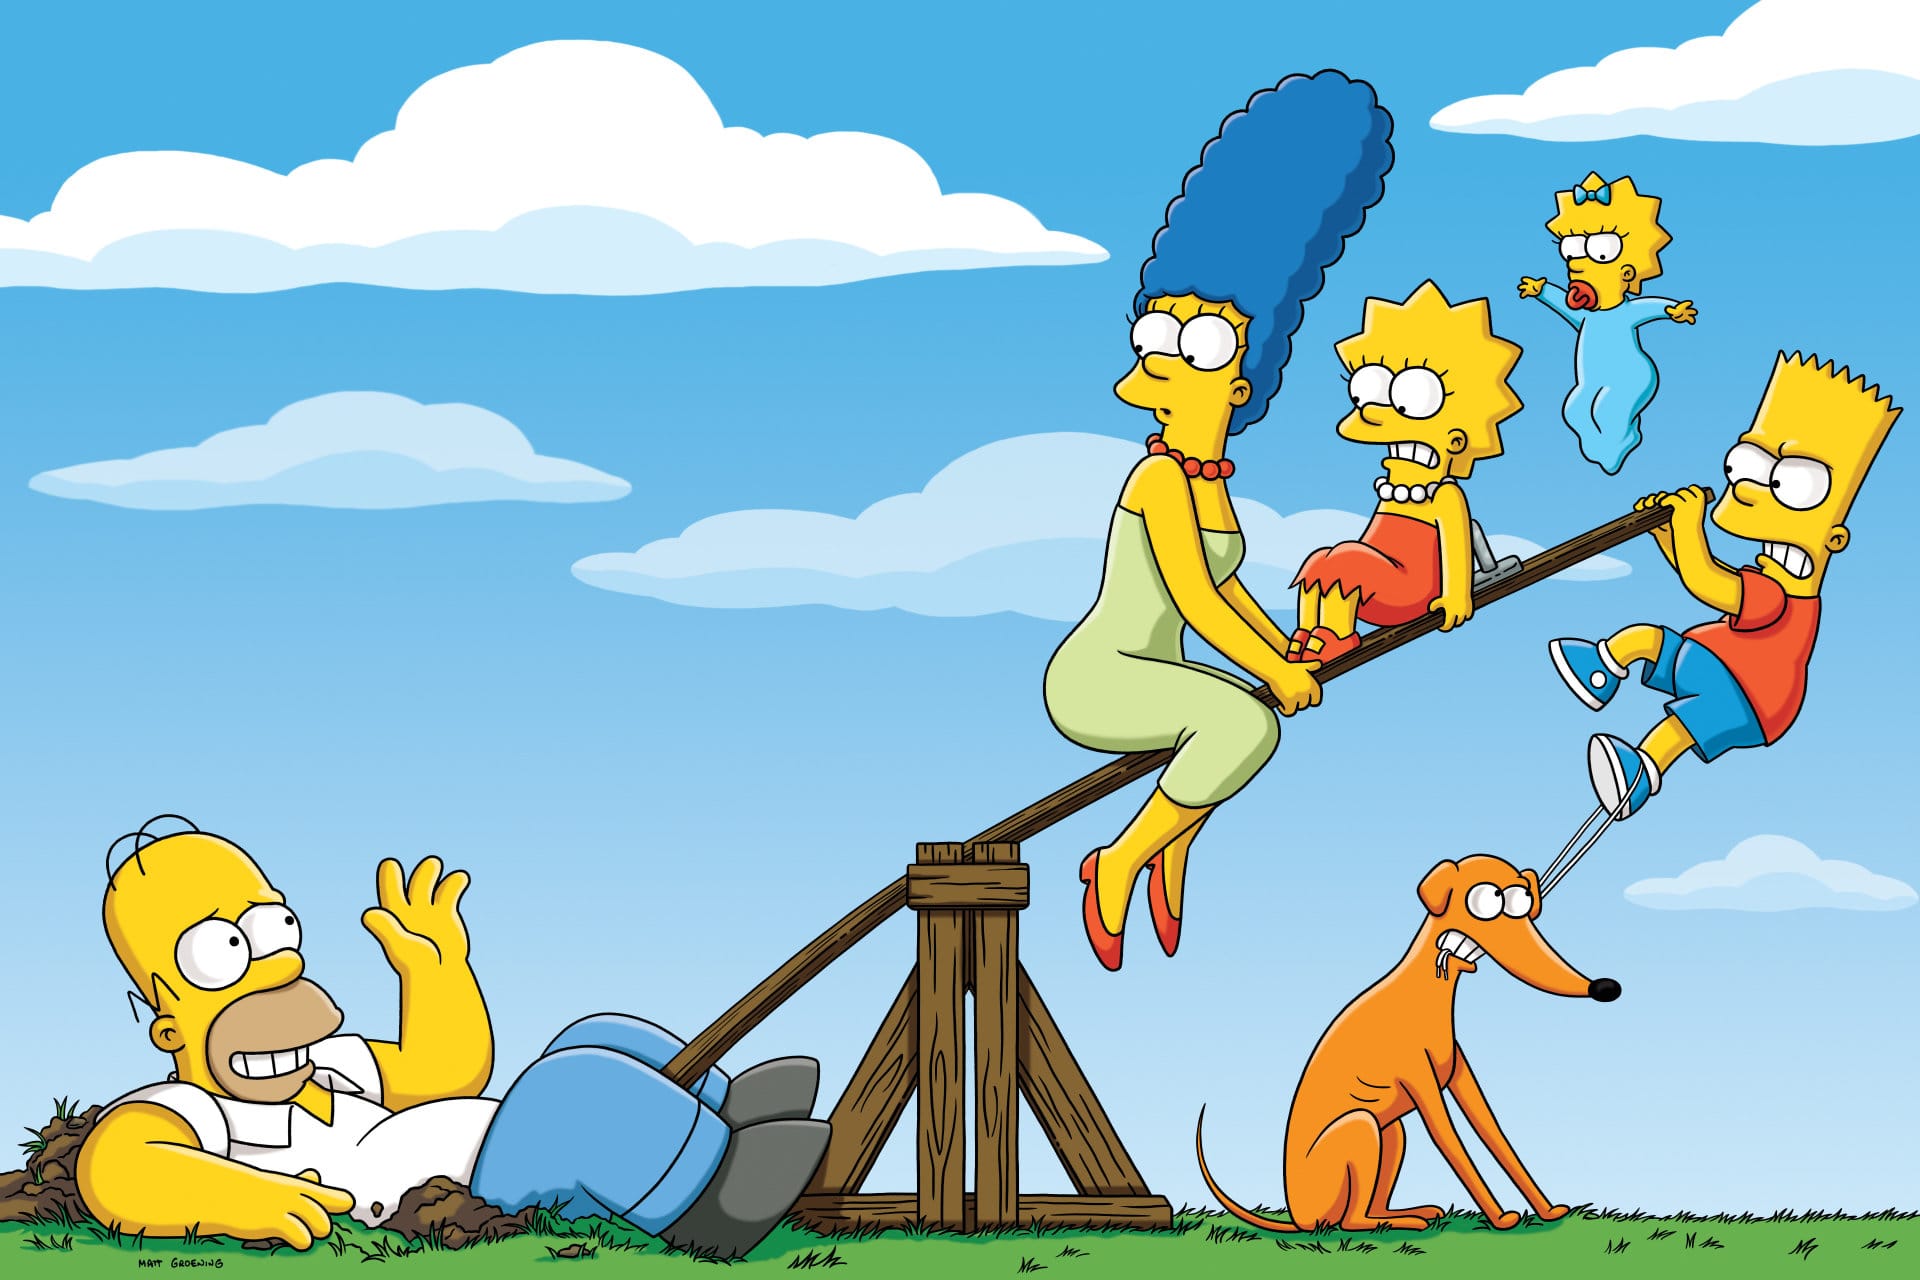 Les Simpson - Saison 25